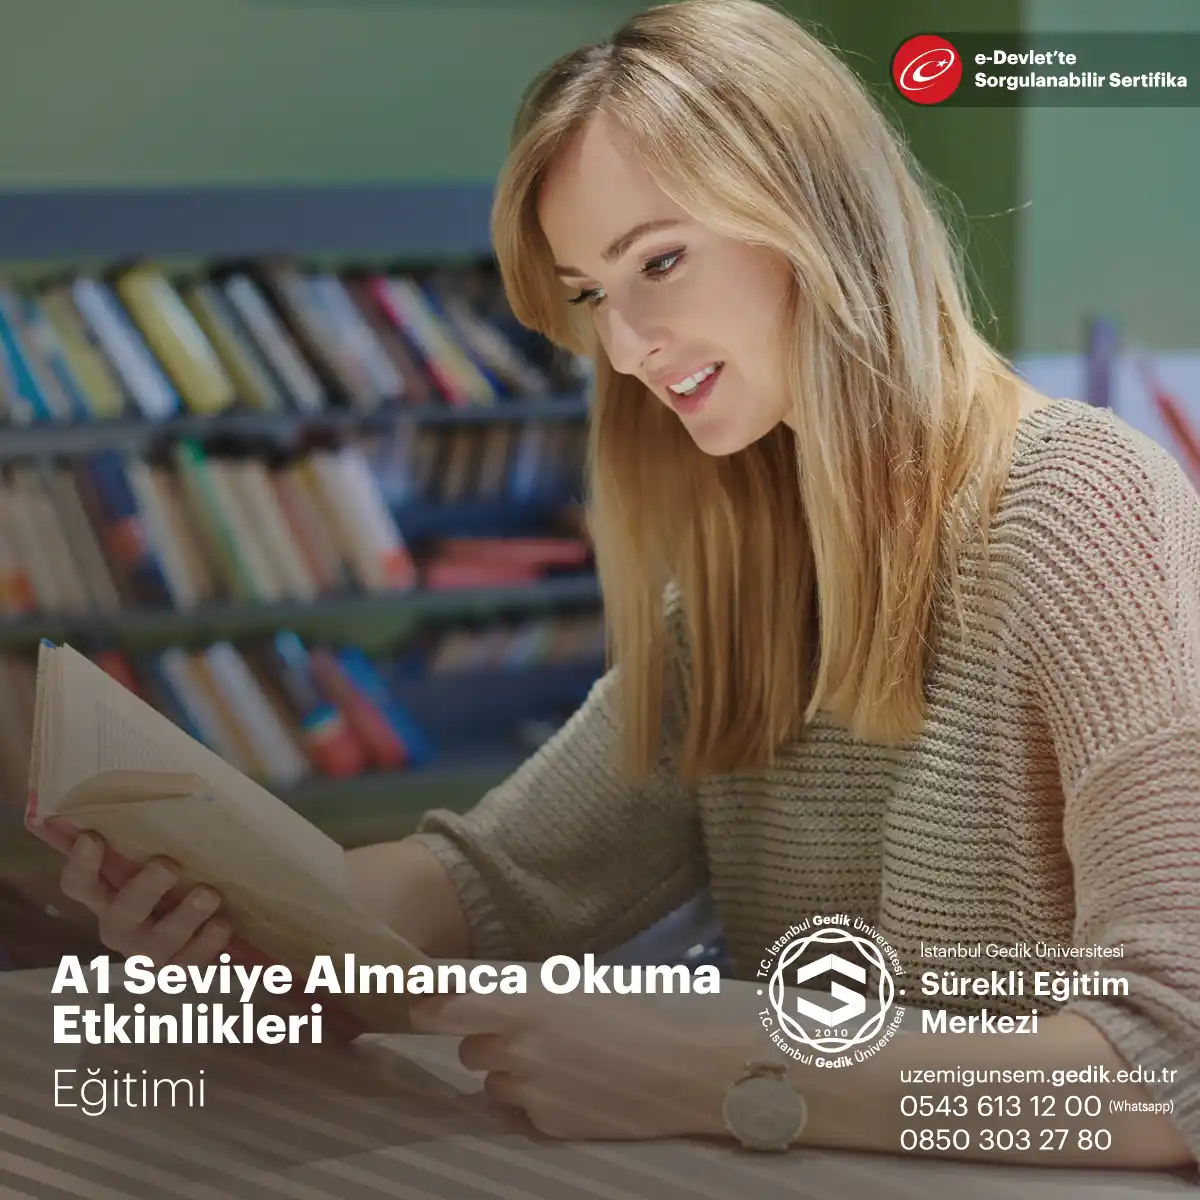 A1 Seviye Almanca Okuma Etkinlikleri Eğitimi, Almanca öğrenenler için temel bir eğitim programıdır.